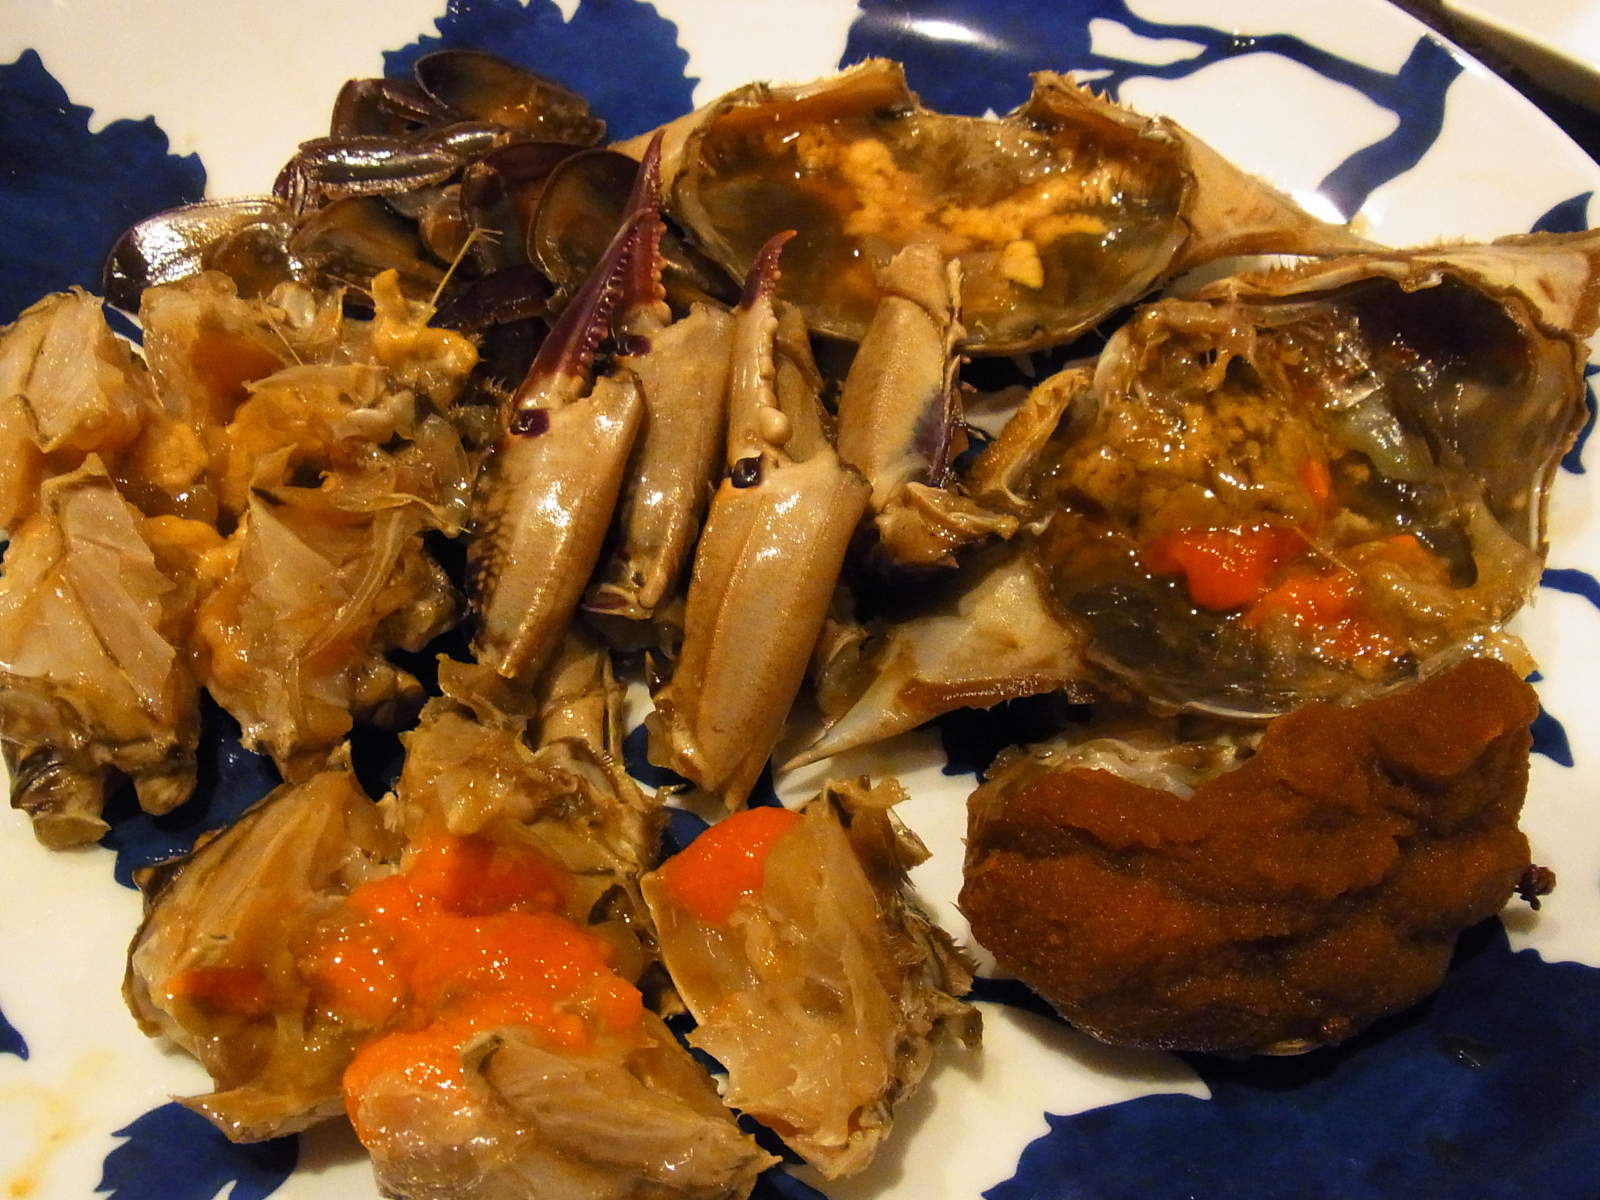 酔蟹 渡り蟹を最高に美味しく食べる方法 ローズマリーとセイジとモミジ 名古屋マダムのグルメブログ